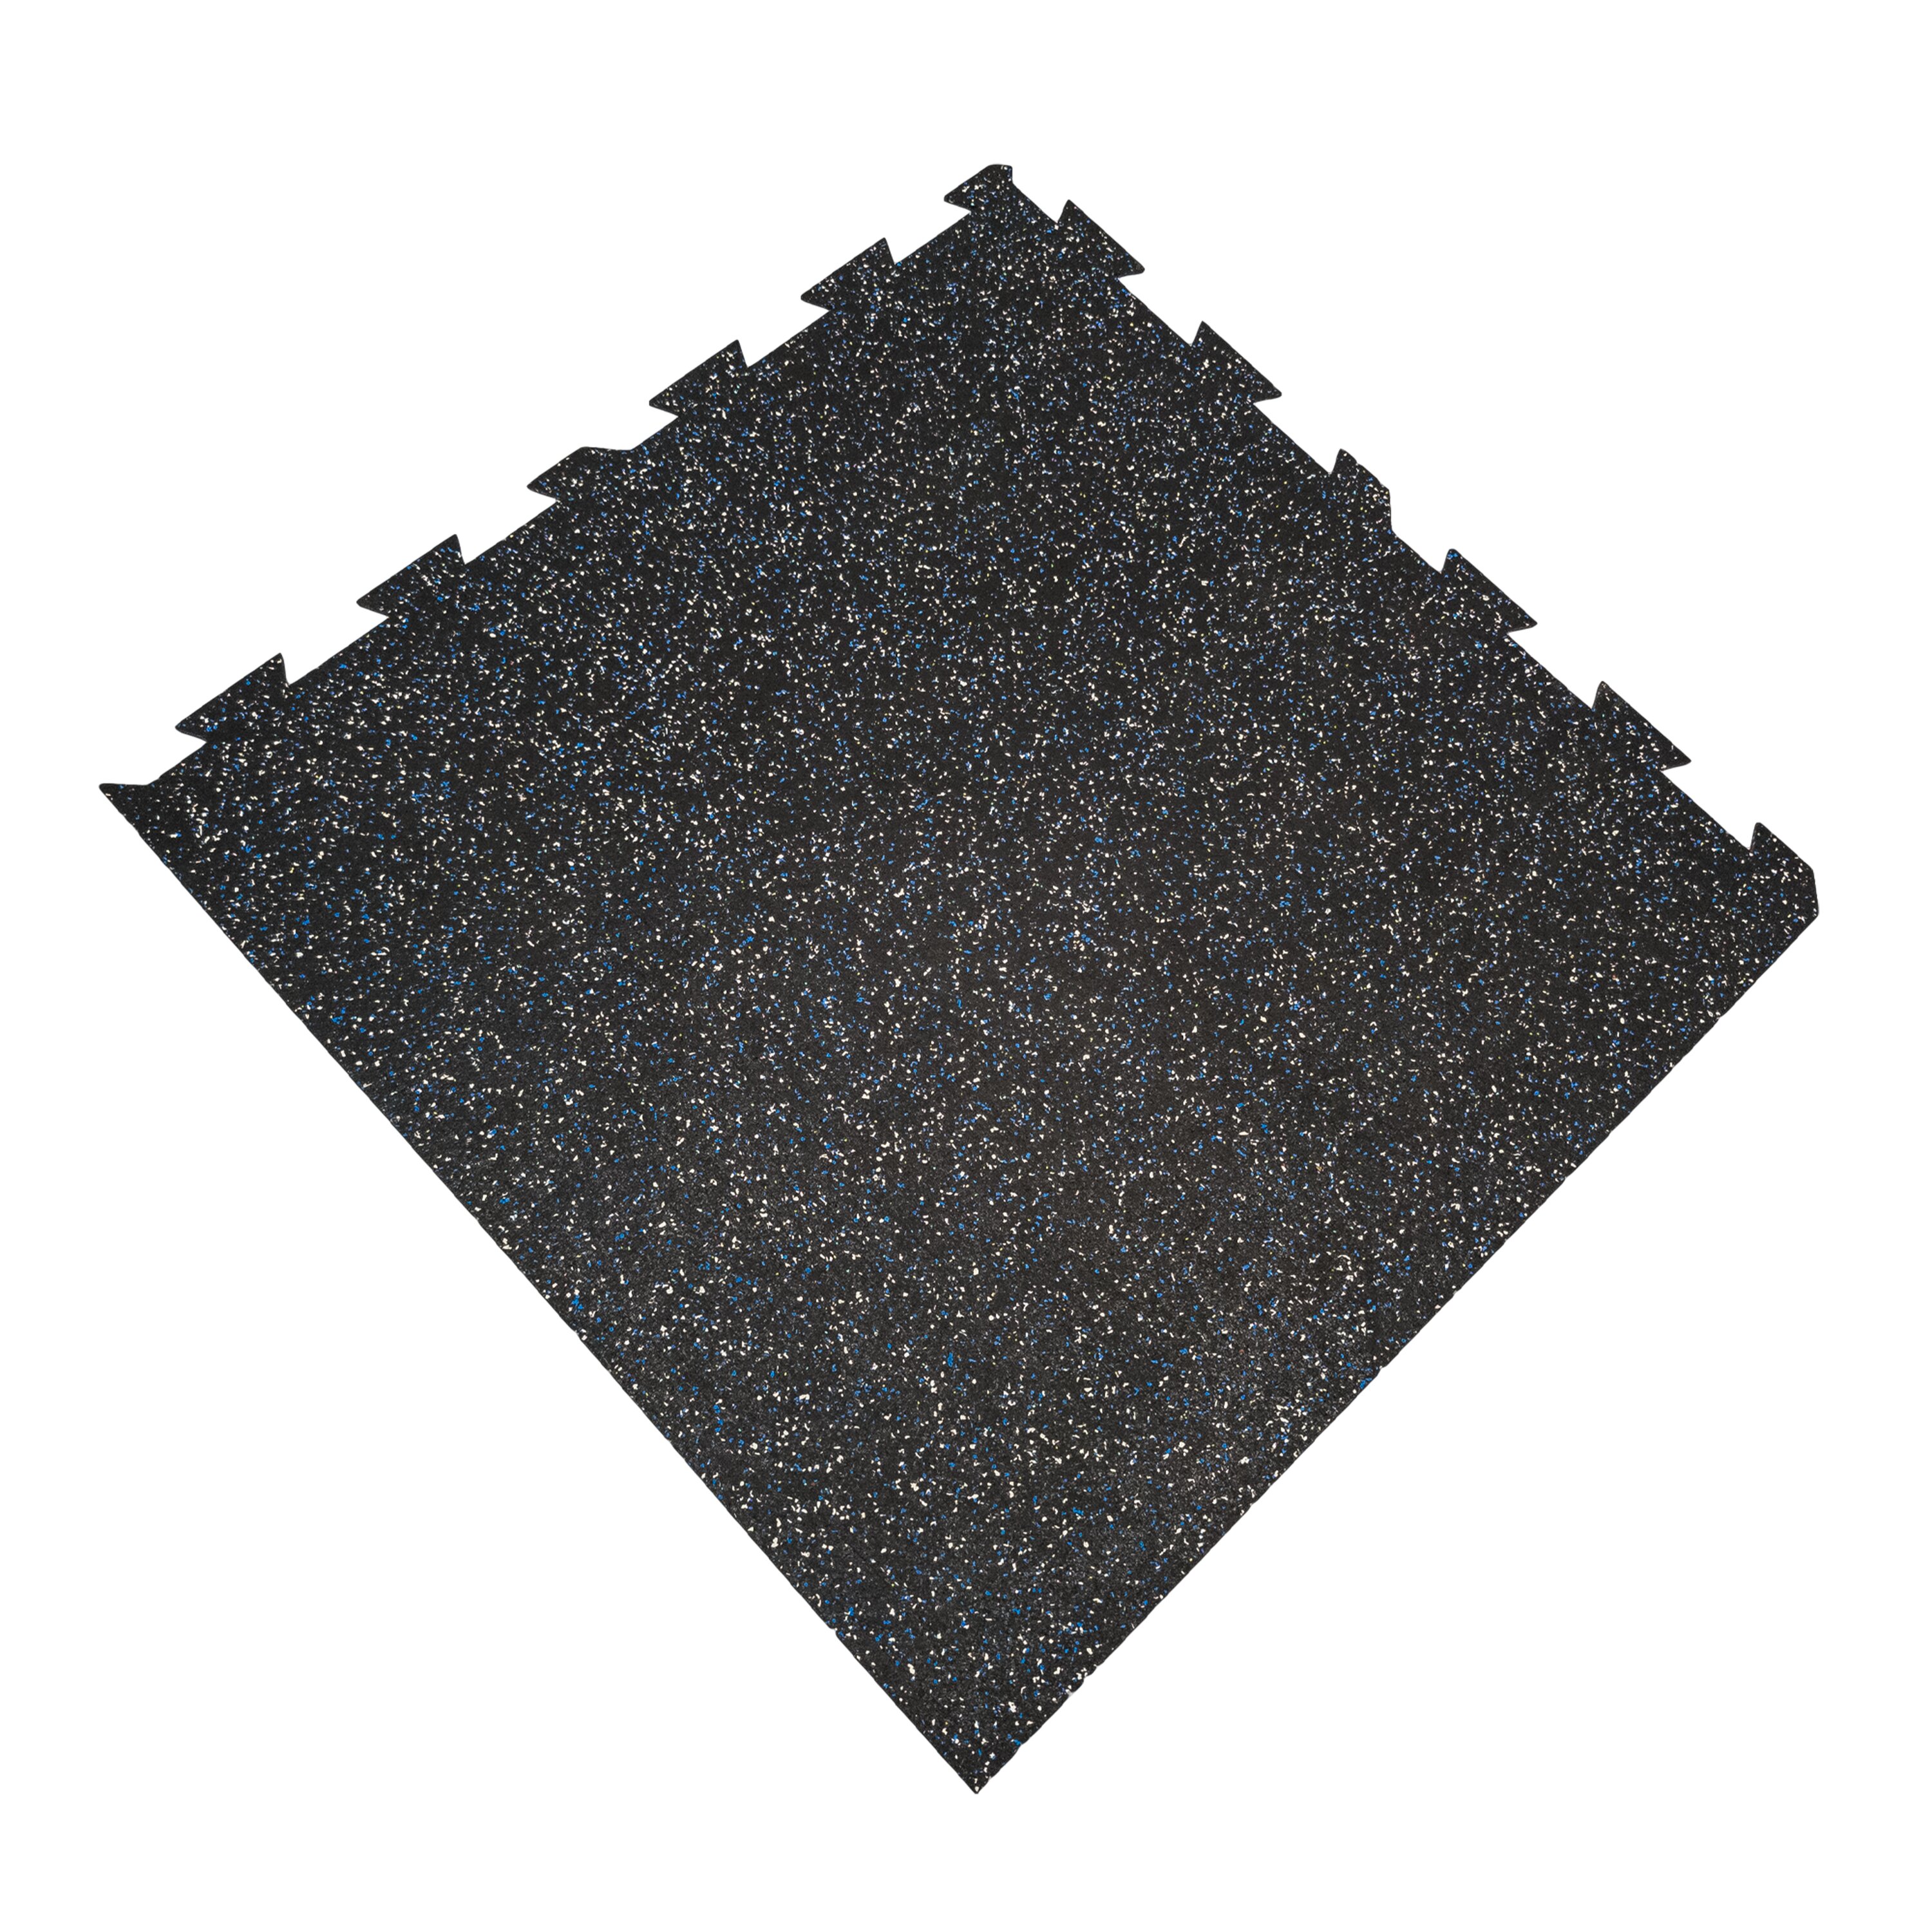 Čierno-bielo-modrá podlahová guma (puzzle - roh) FLOMA FitFlo SF1050 - dĺžka 100 cm, šírka 100 cm, výška 1,6 cm